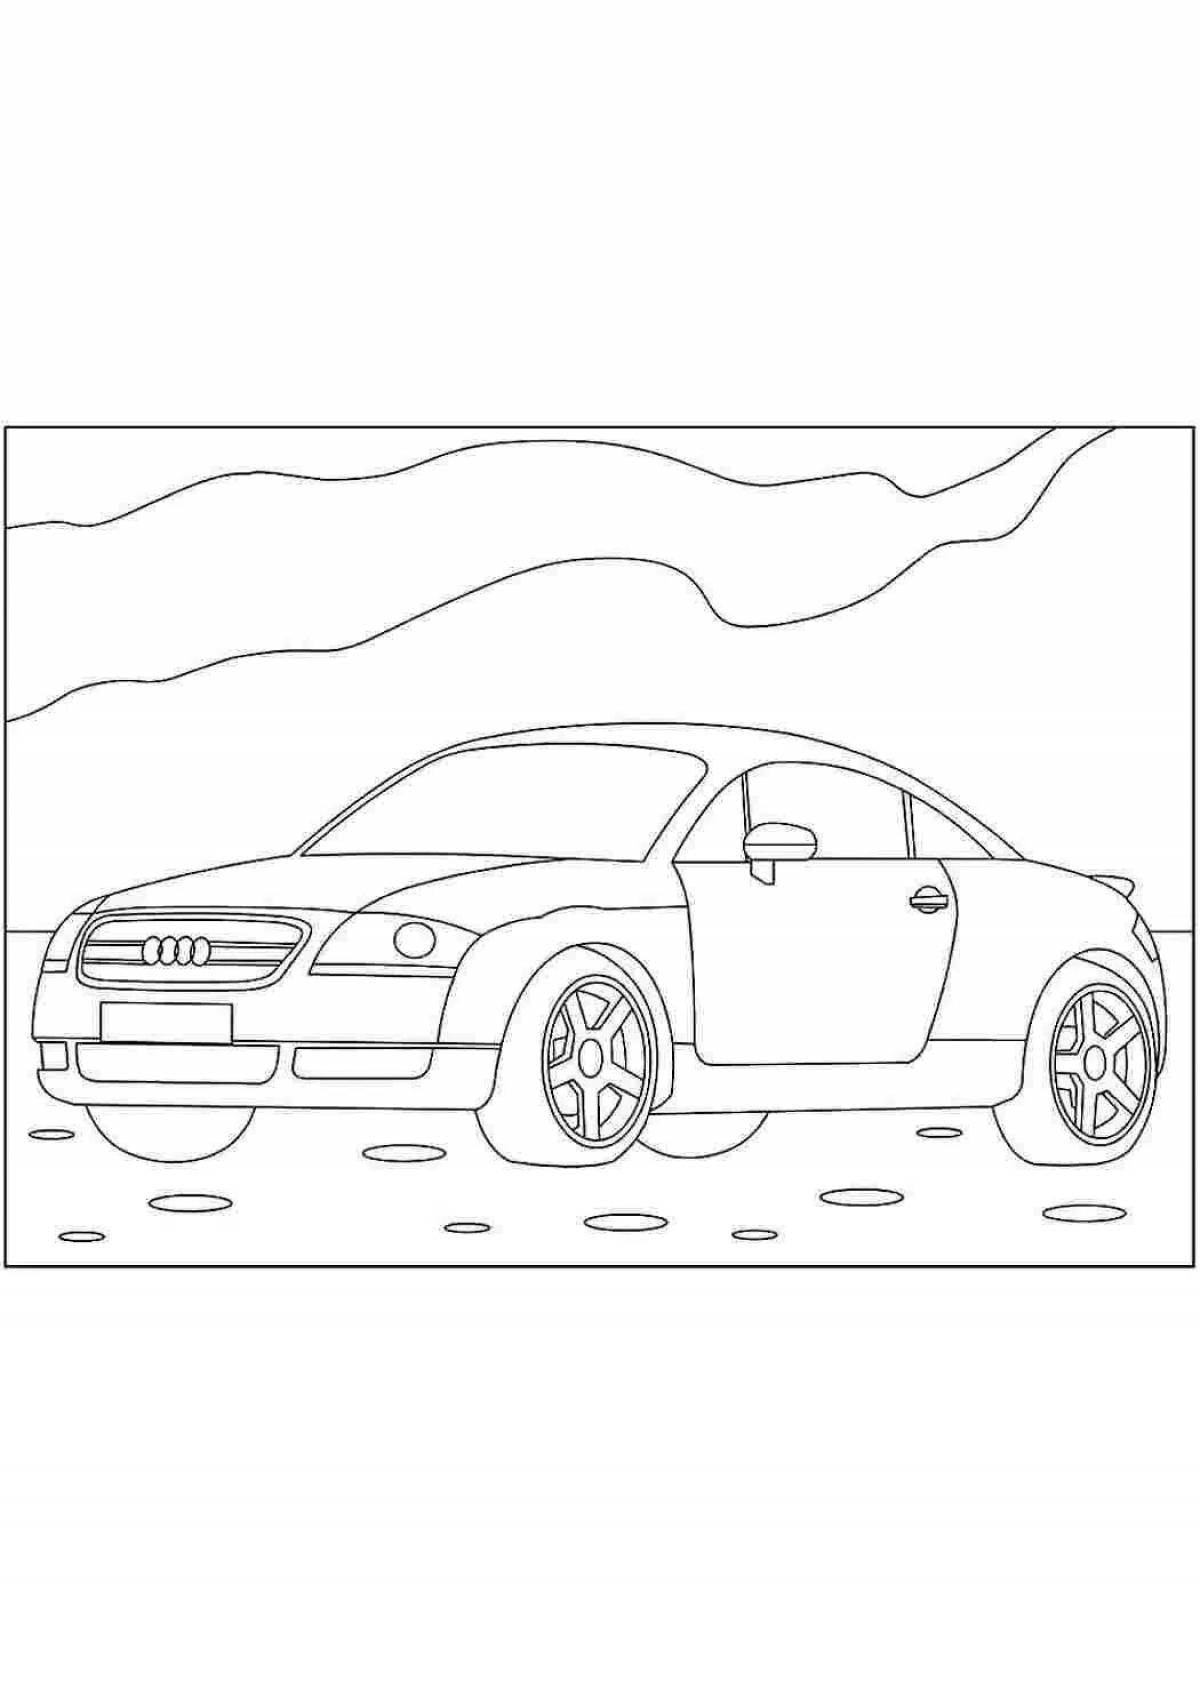 Audi fun coloring for kids